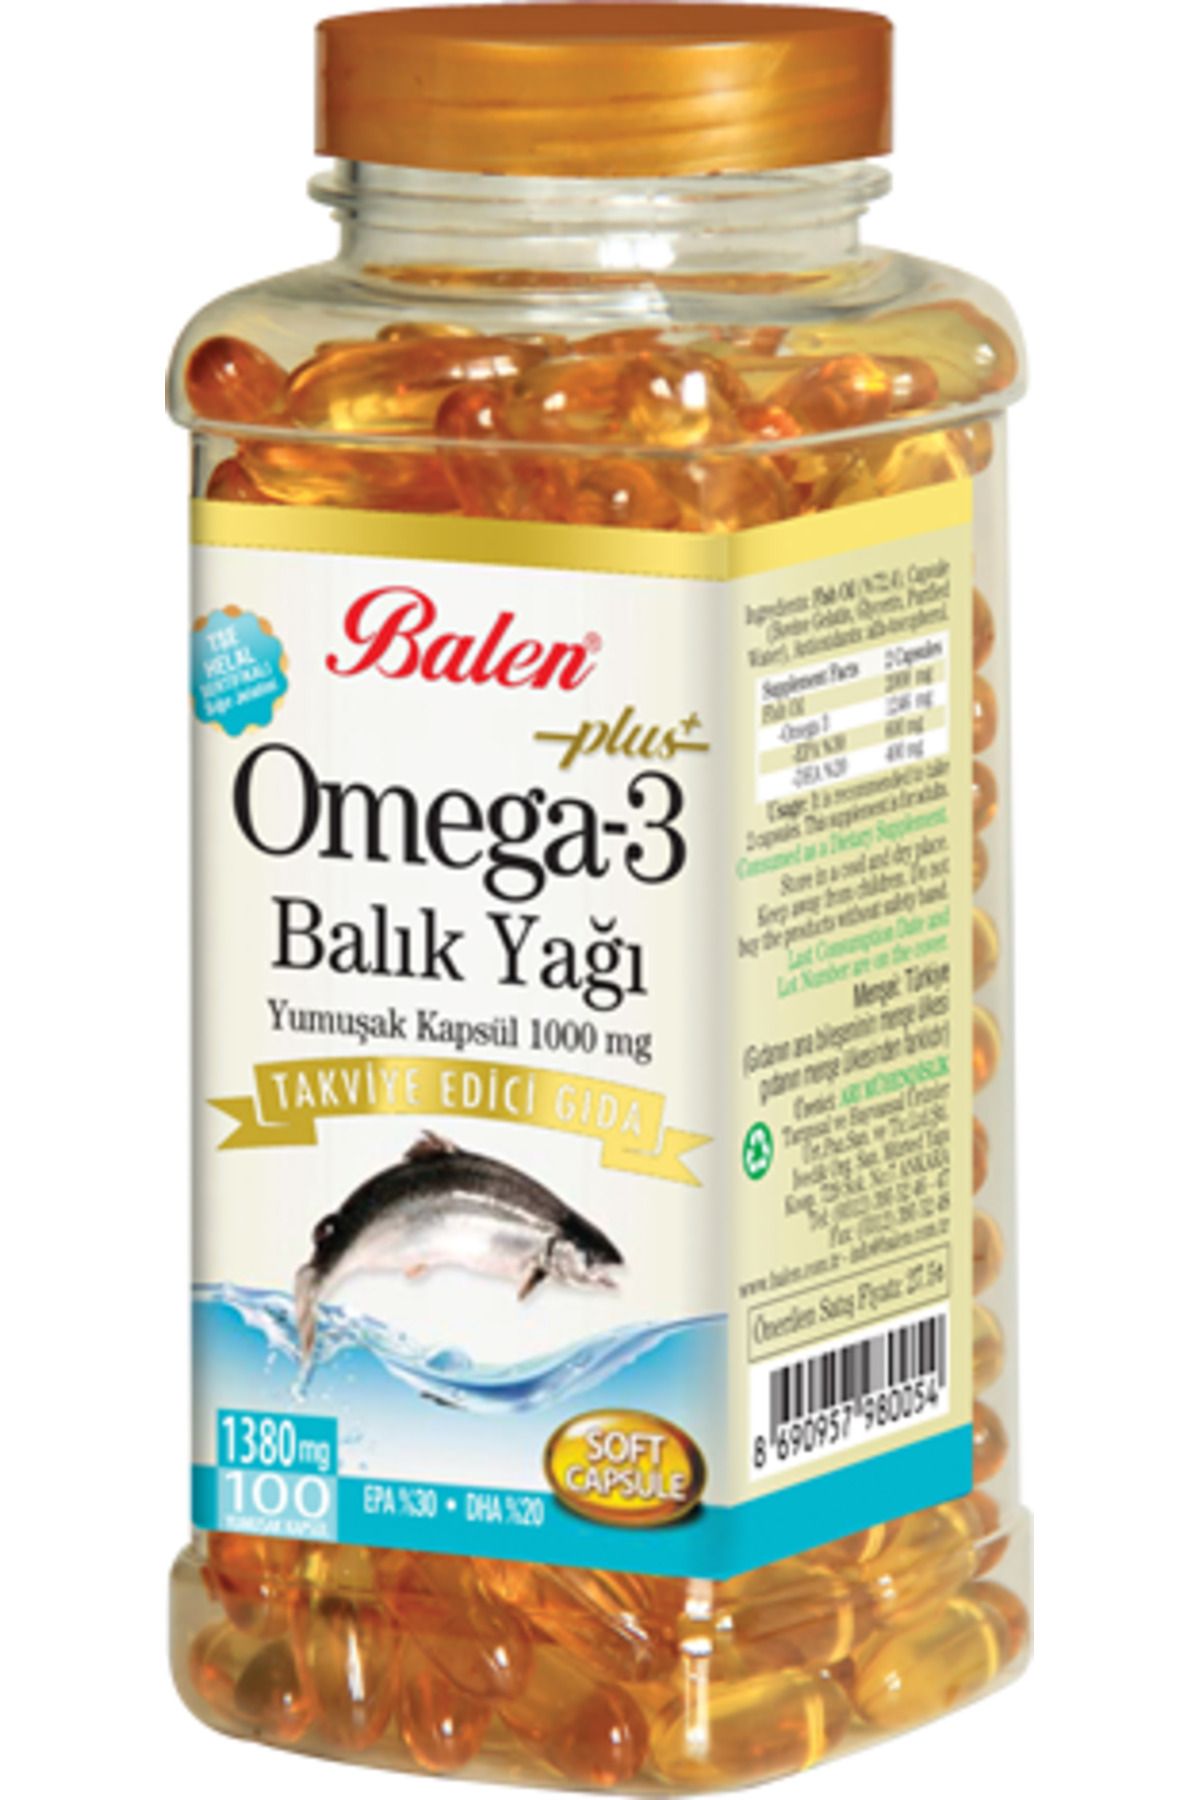 Balen Omega 3 Balık Yağı Yumuşak Kapsül 1380 Mg* 100